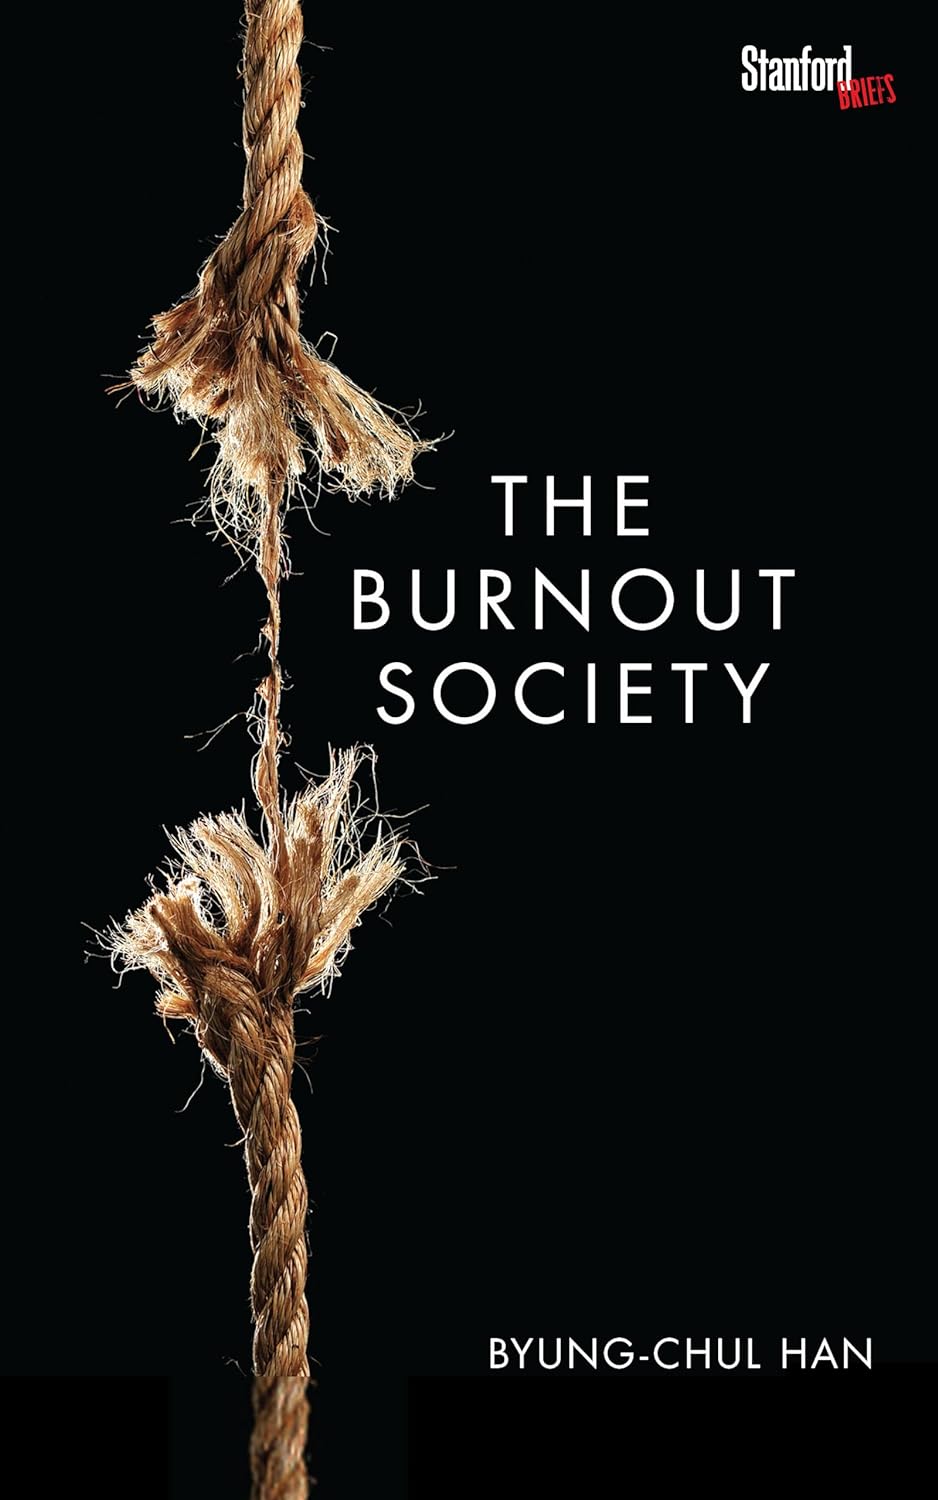 The Burnout Society ร้านหนังสือและสิ่งของ เป็นร้านหนังสือภาษาอังกฤษหายาก และร้านกาแฟ หรือ บุ๊คคาเฟ่ ตั้งอยู่สุขุมวิท กรุงเทพ